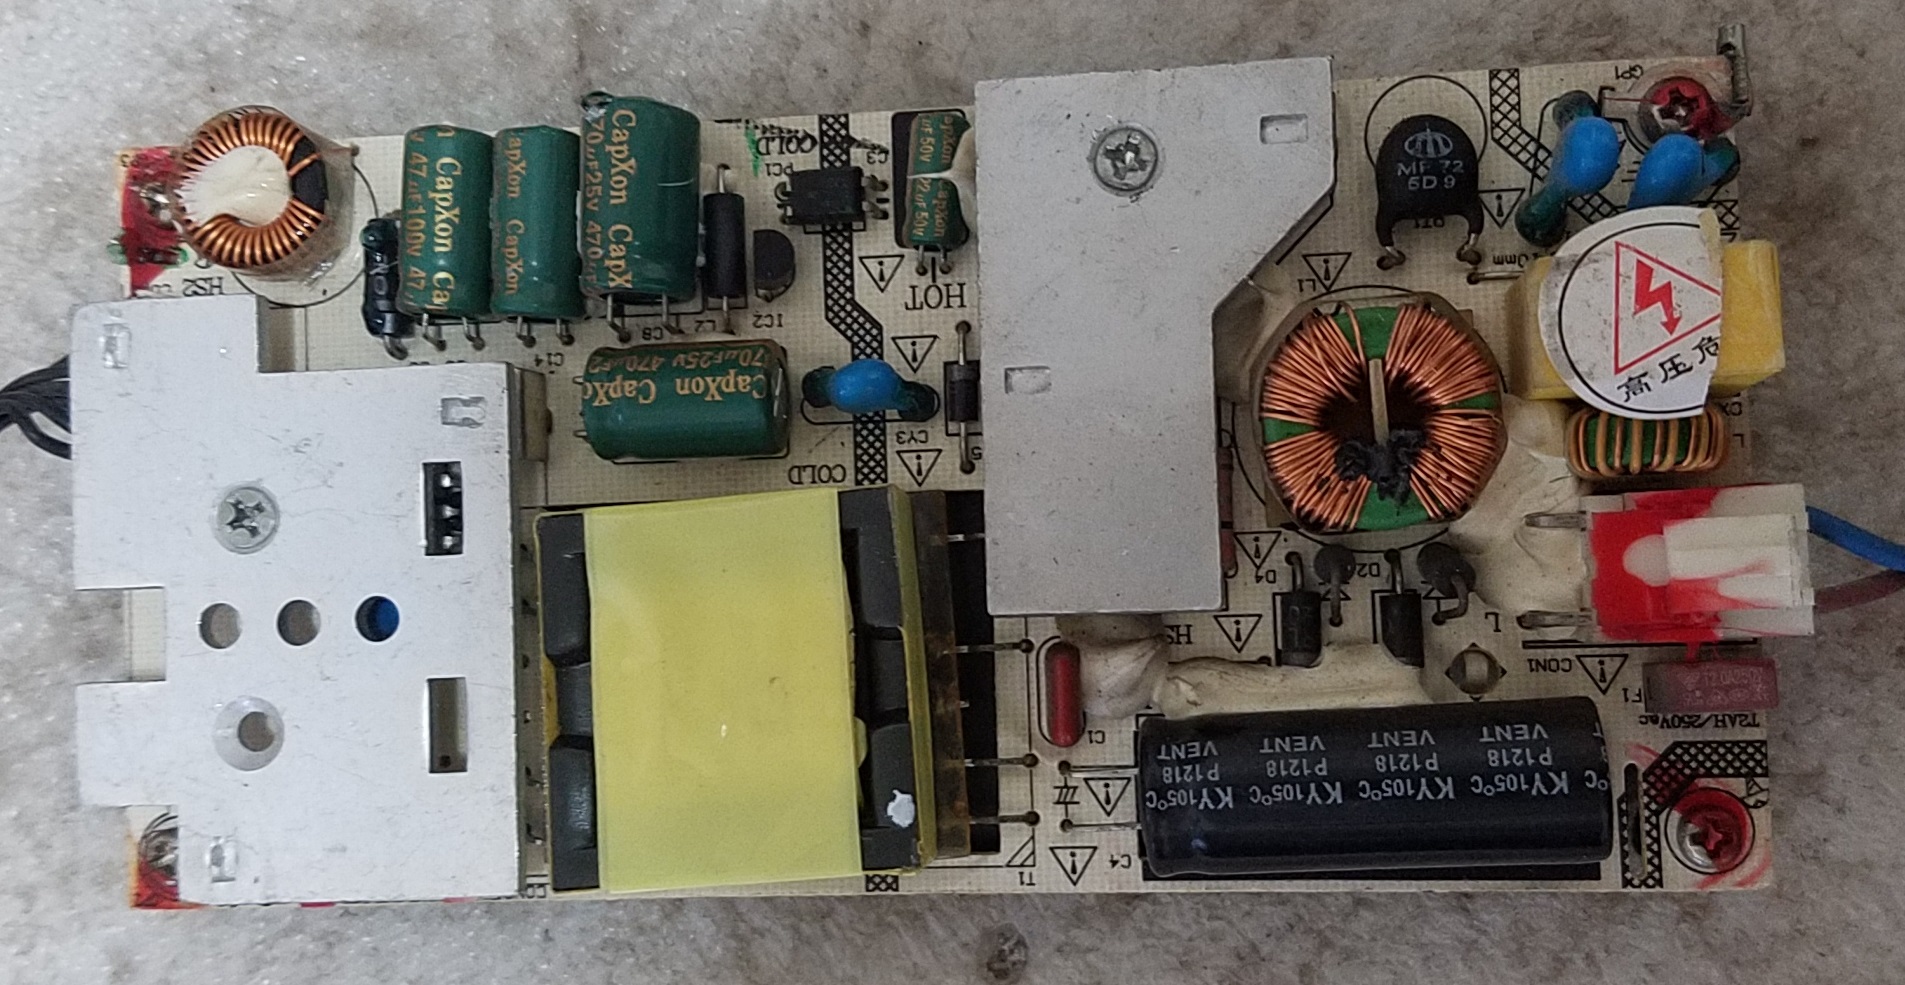 LKP-PL031 power supply board